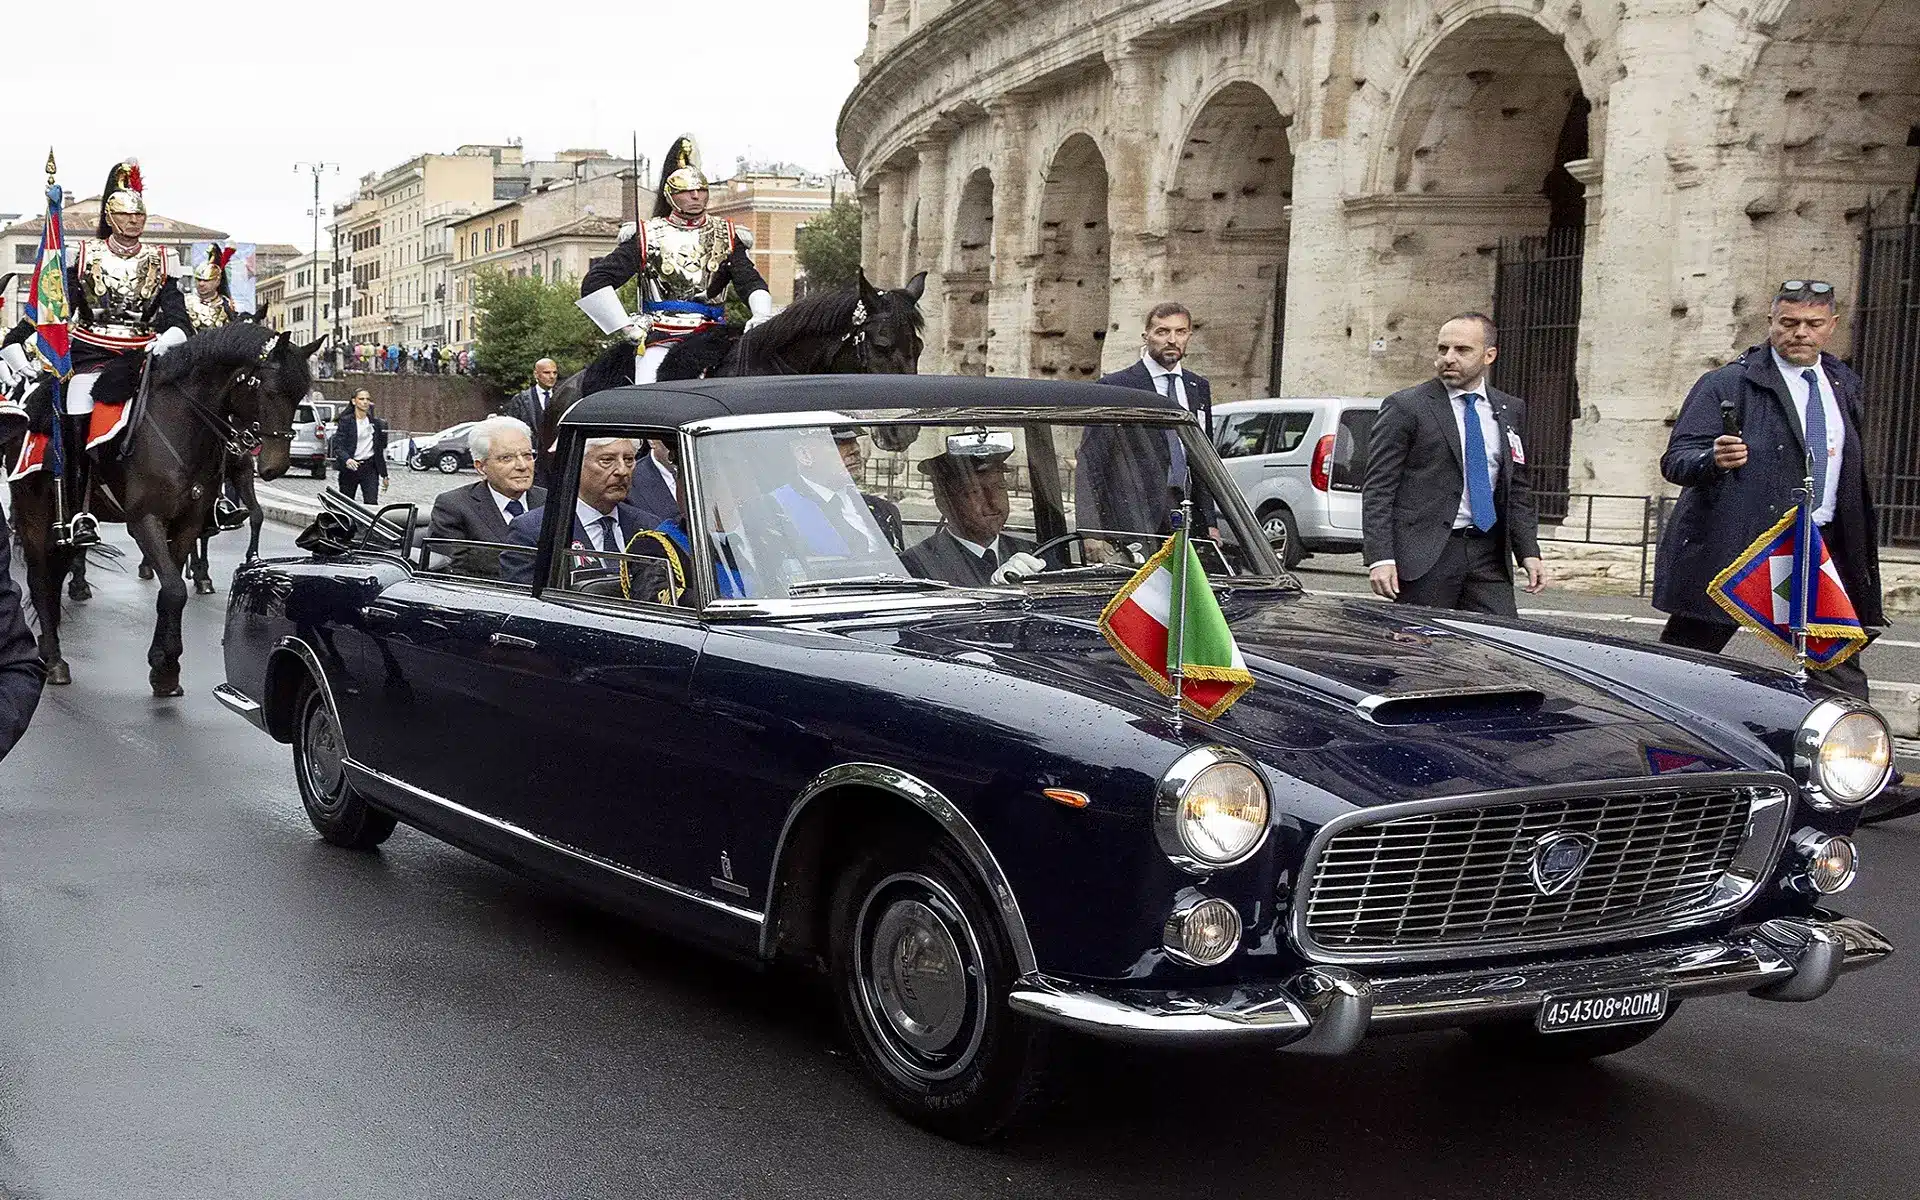 Όπως και τα προηγούμενα χρόνια η Lancia Flaminia ήταν το όχημα που μετέφερε τον Πρόεδρο της Ιταλικής Δημοκρατίας Σέρτζιο Ματαρέλα, στη στρατιωτική παρέλαση